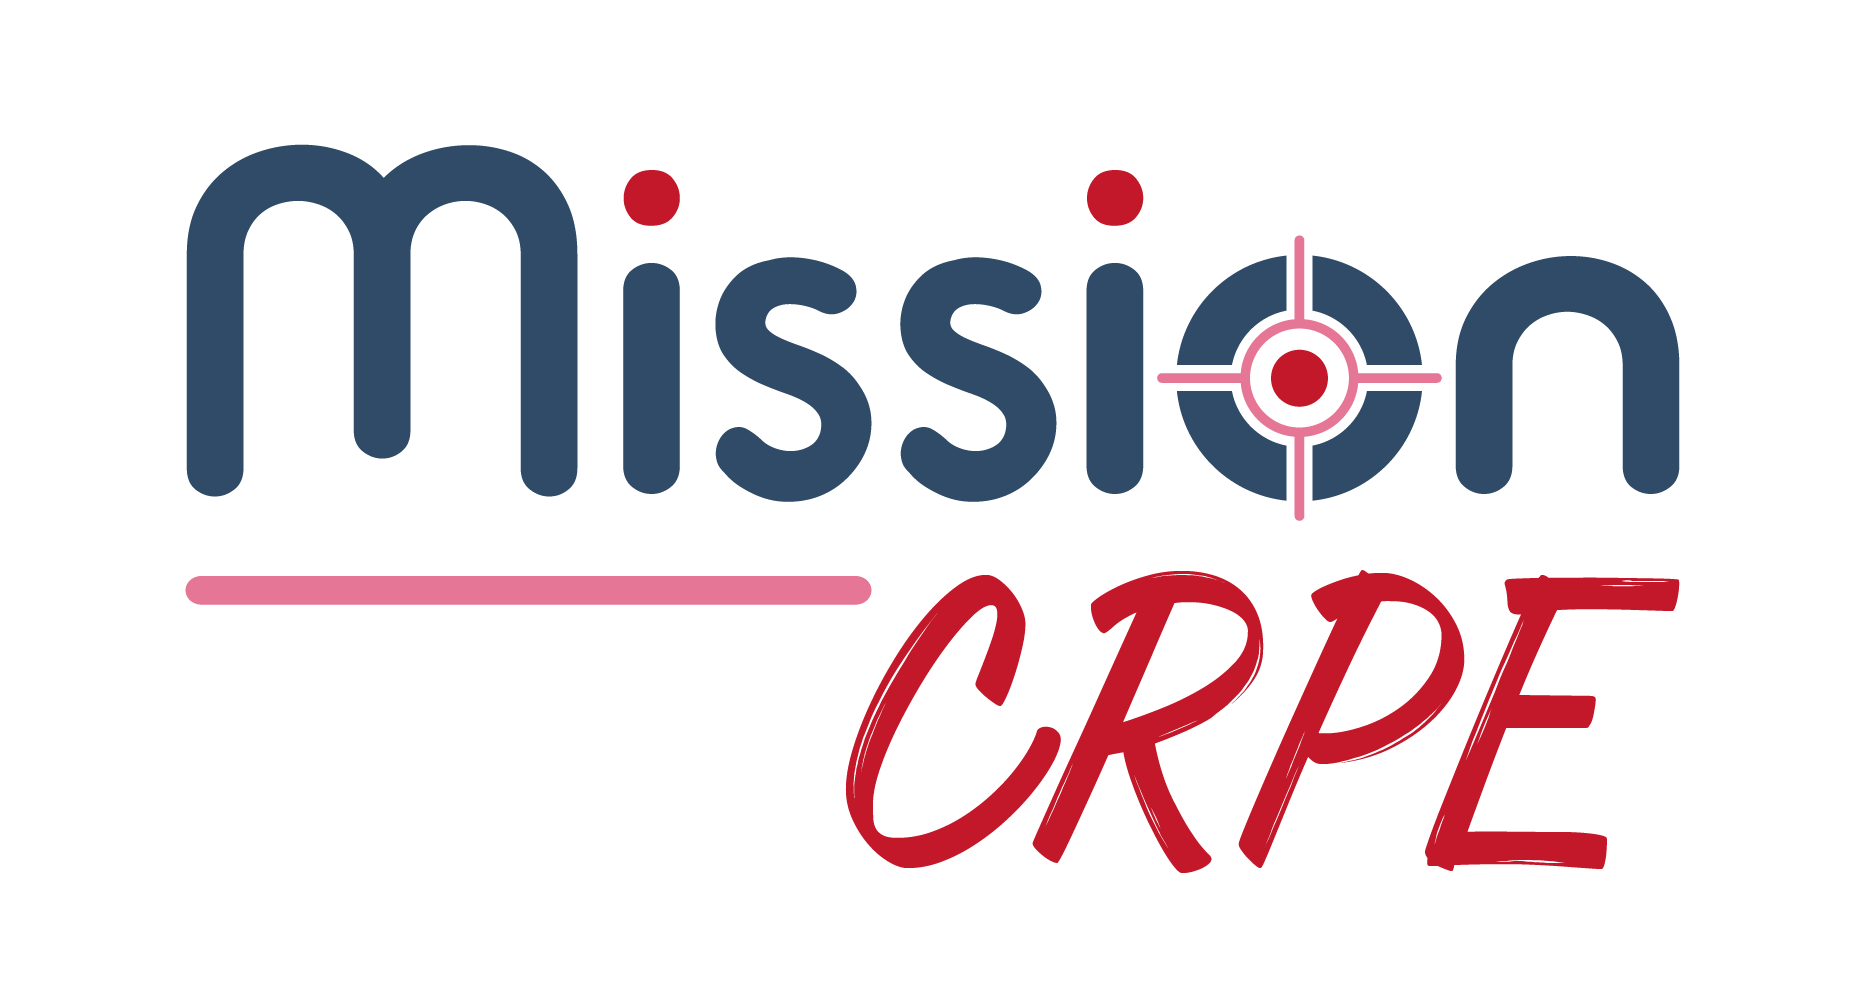 Mission CRPE